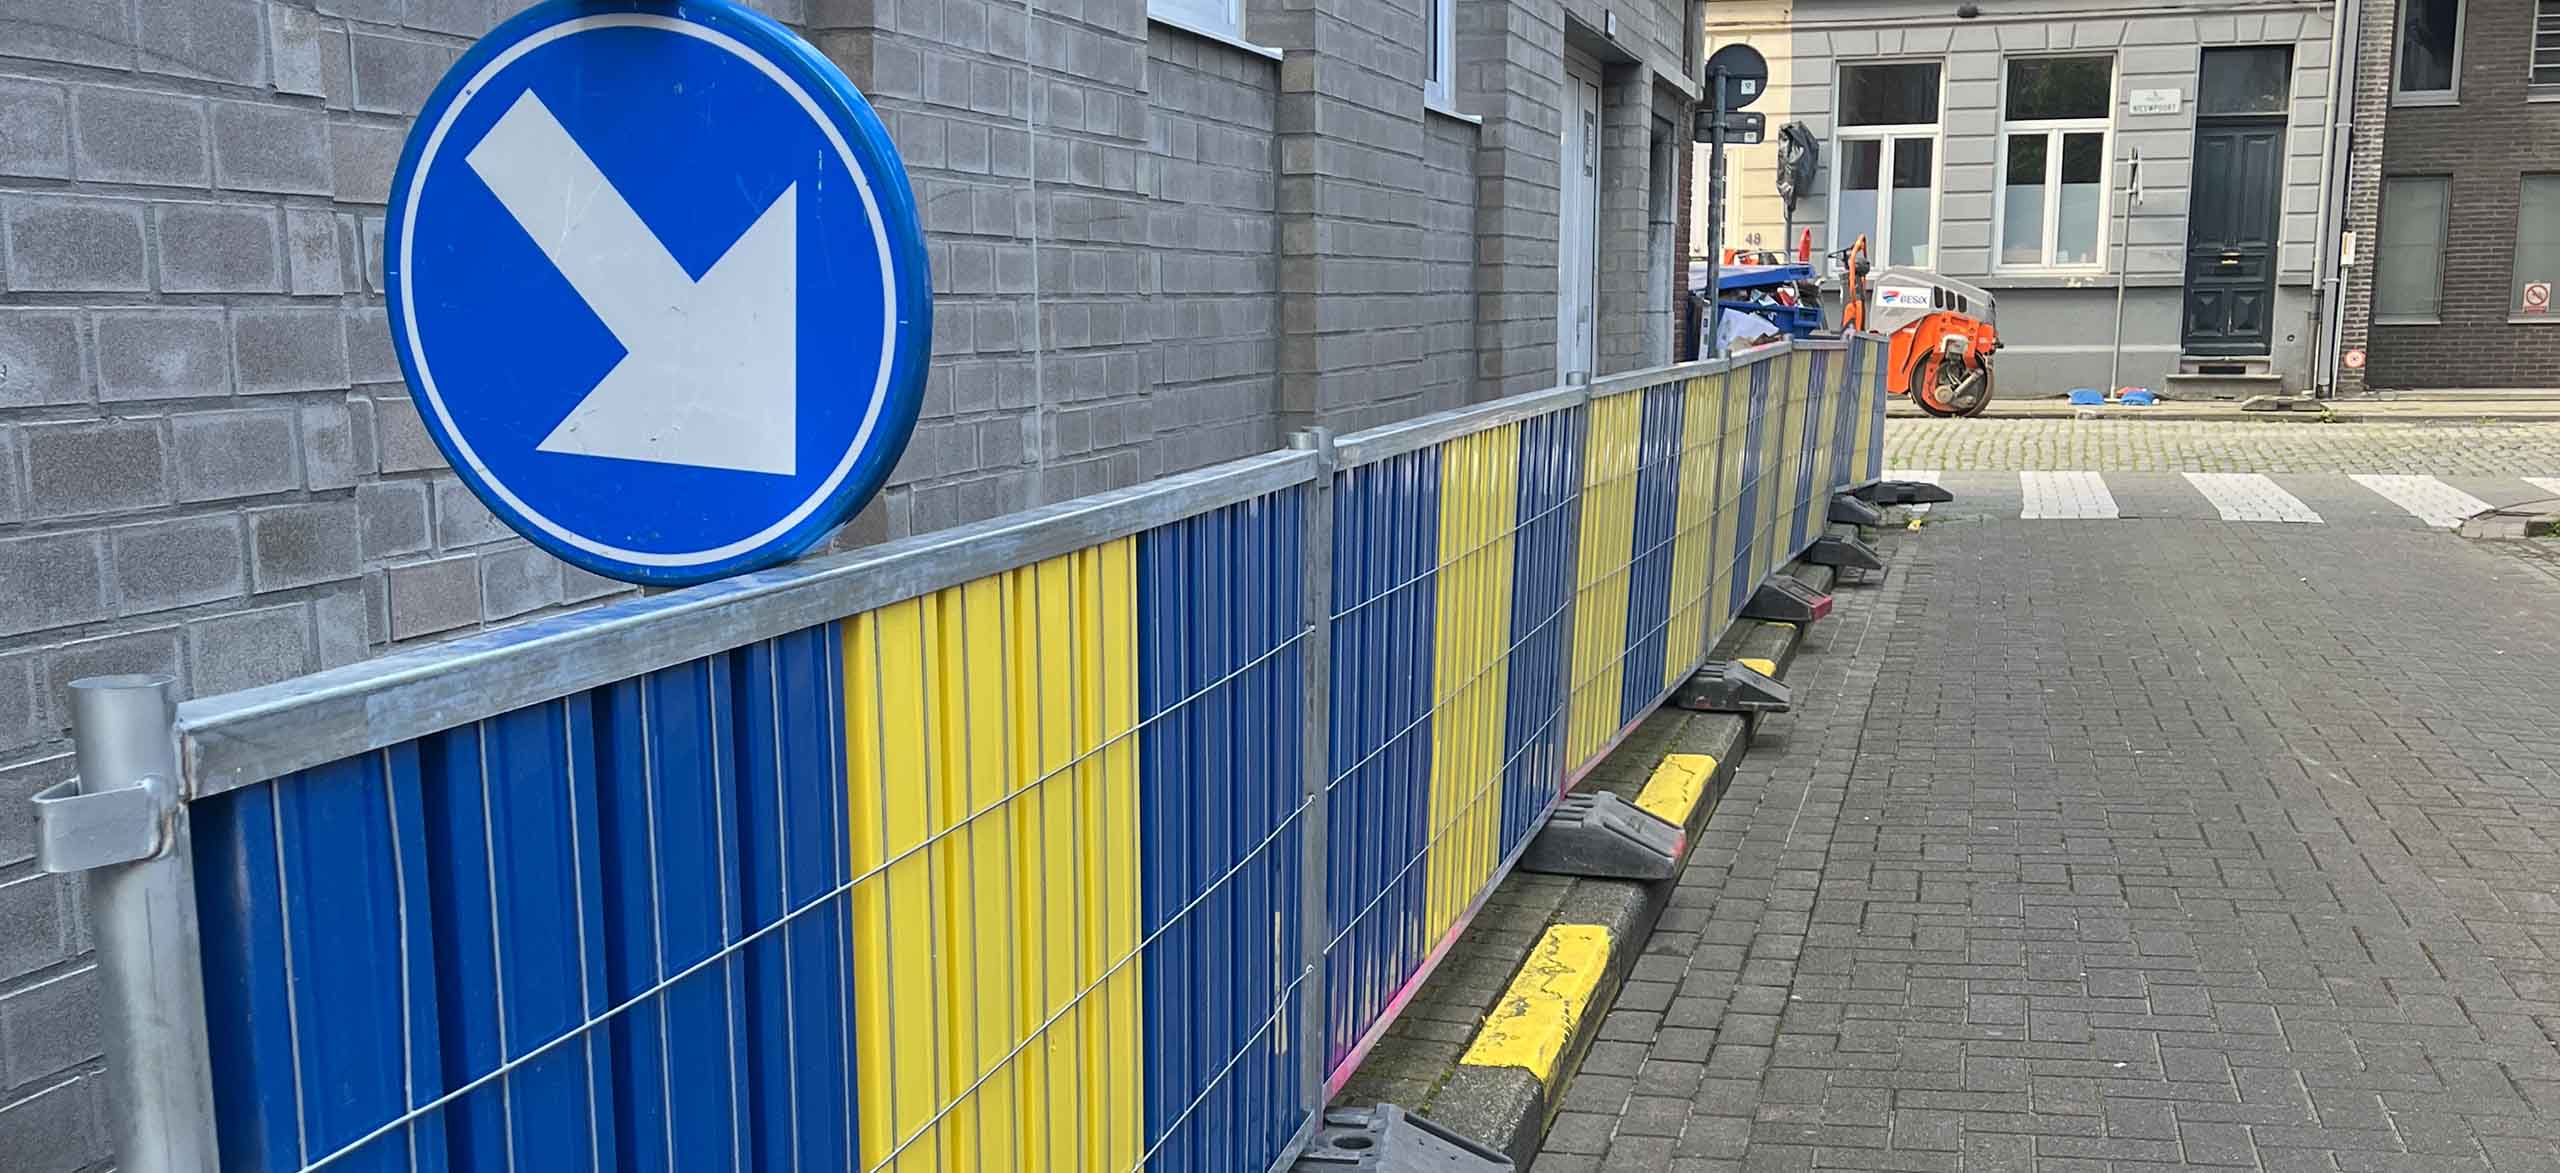 Wegsignalisatie blauw gele werfhekkens type Brussel huren en laten plaatsen